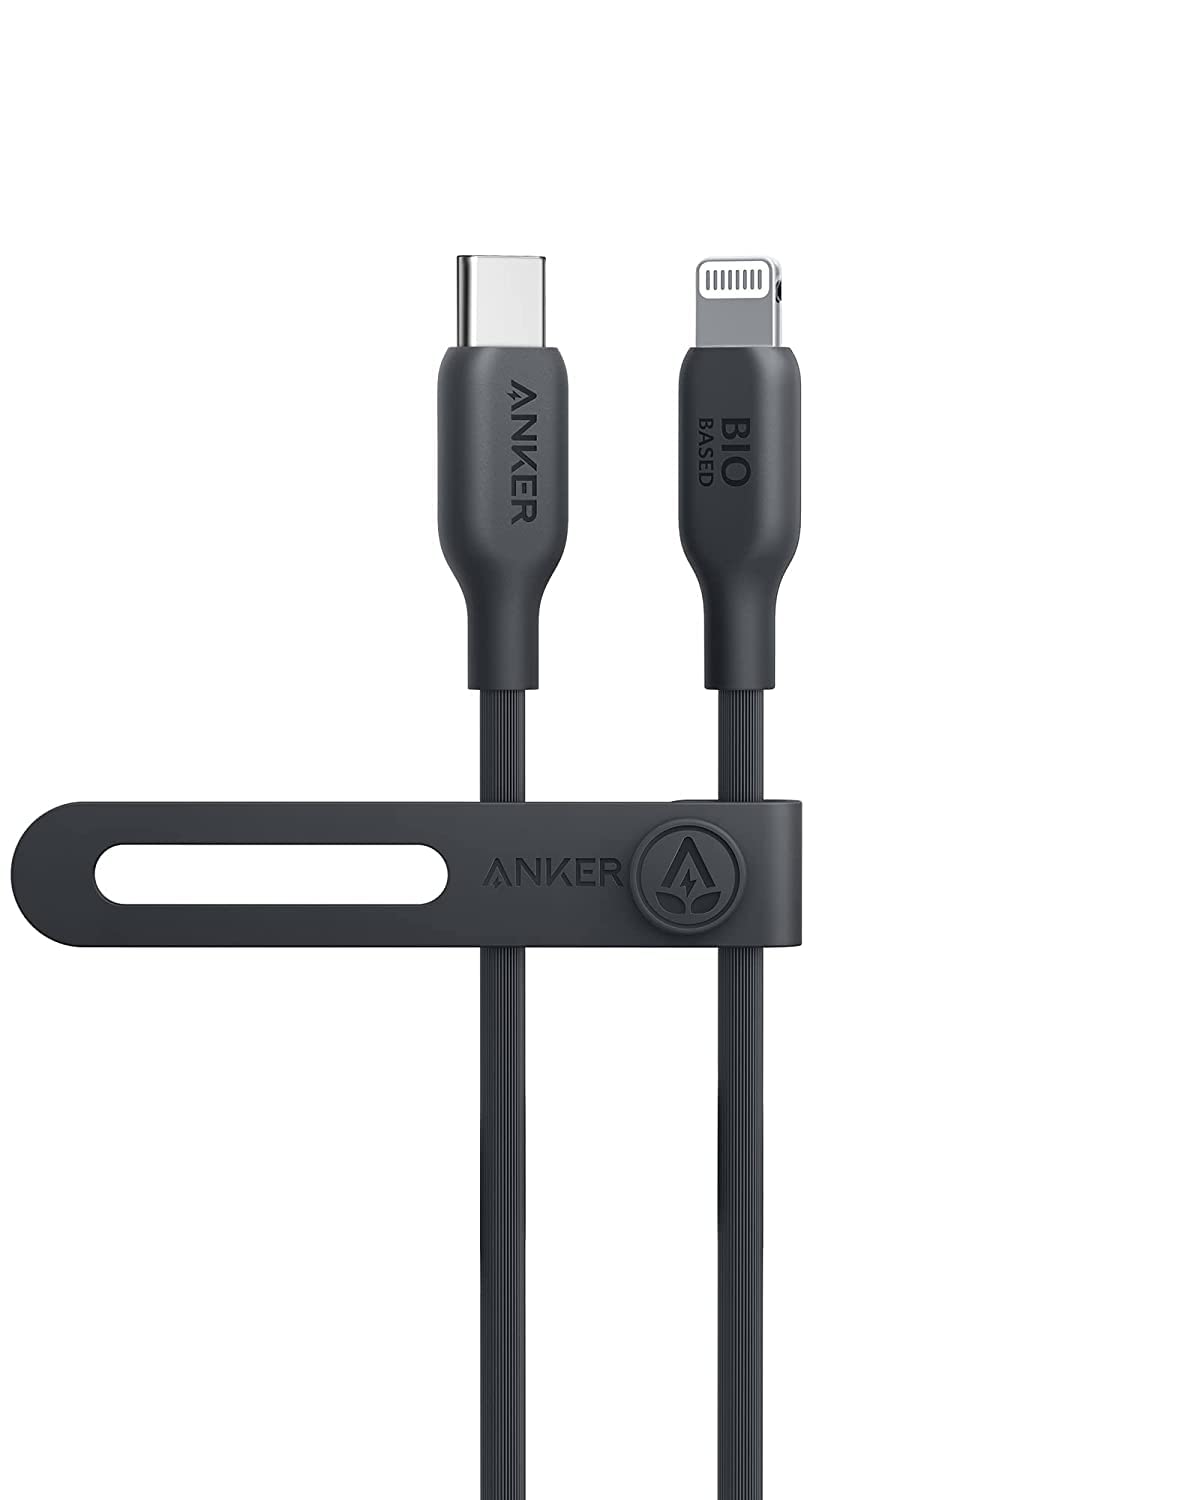 økse Skabelse værdighed Anker 542 USB-C to Lightning Cable (Bio-Based 3ft) - Black